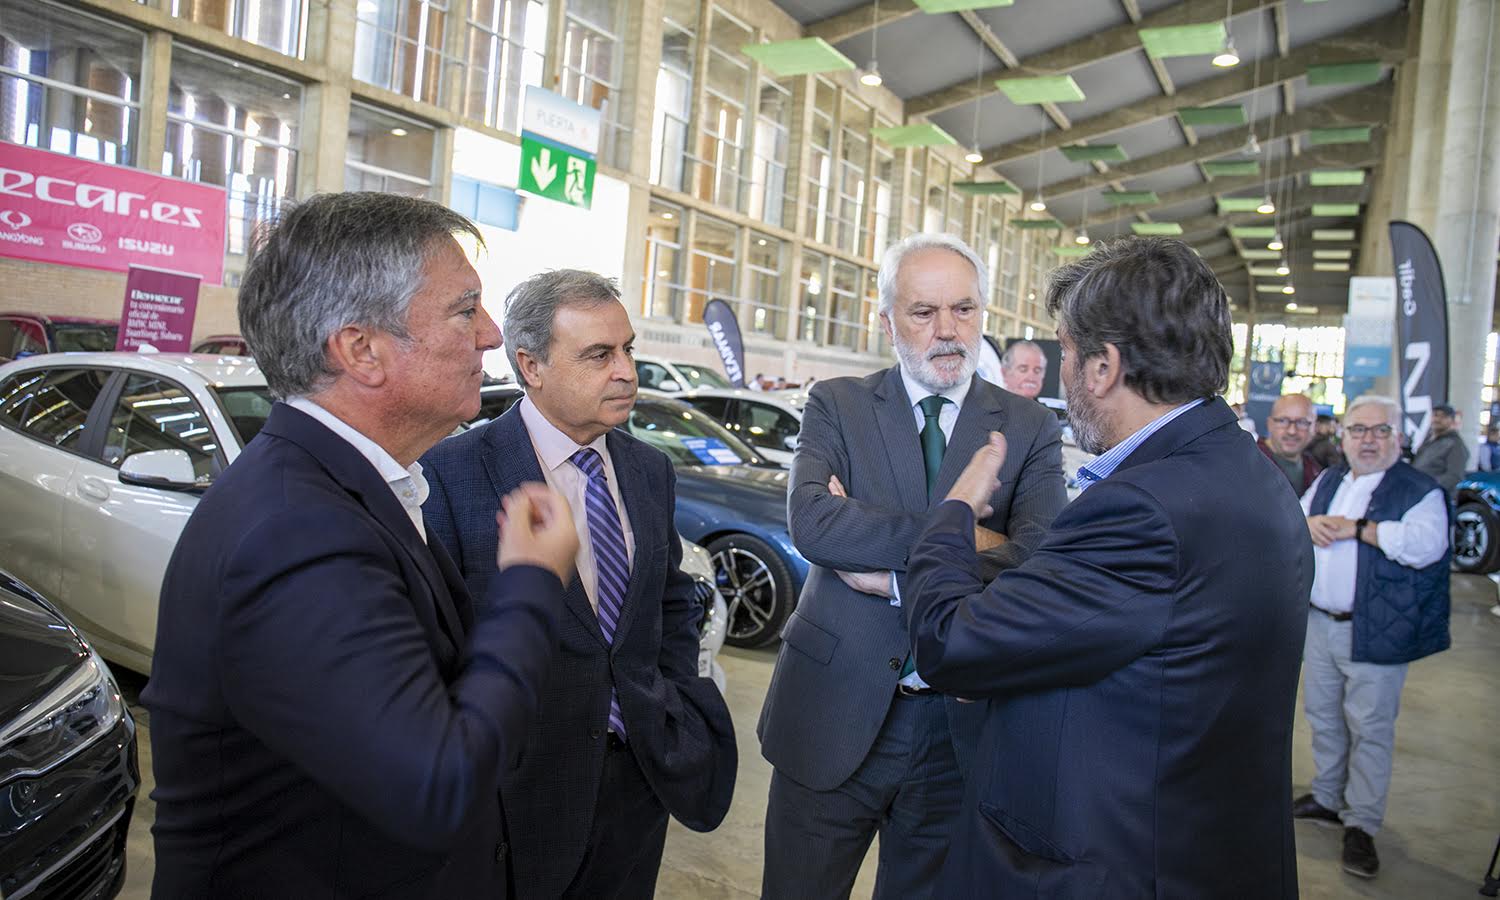 Motorsur en Jerez reúne más de 800 vehículos: "Una ocasión para lograr descuentos". Organizadores y delegados municipales en el acto inaugural. 